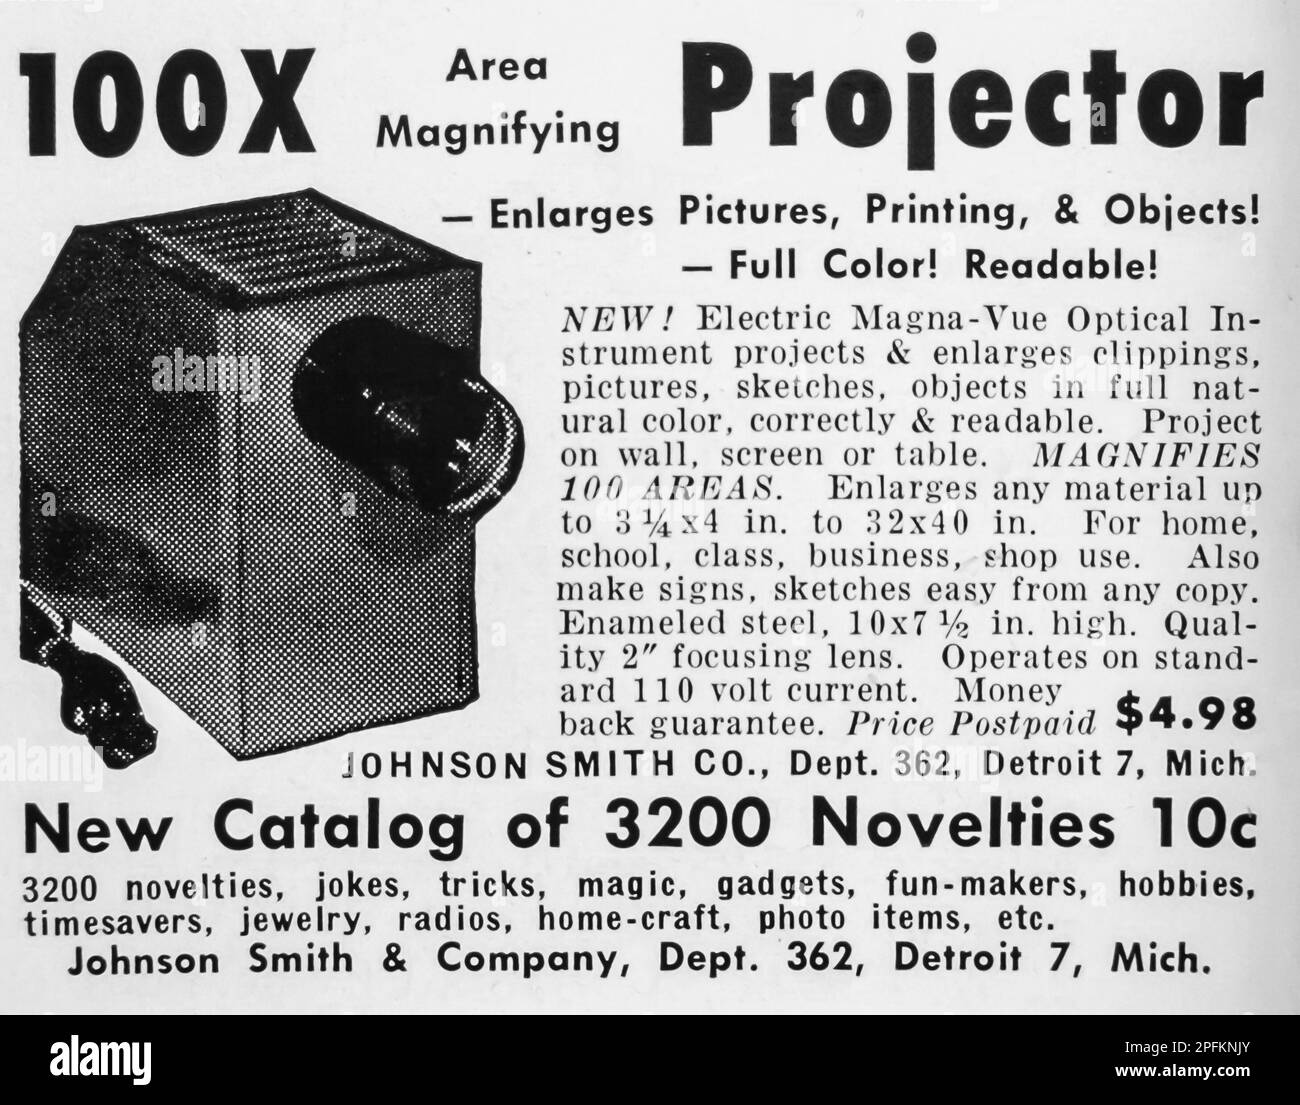 Johnson Smith Electric Magna-Vue strumento ottico spot in una rivista NatGeo, novembre 1956 Foto Stock